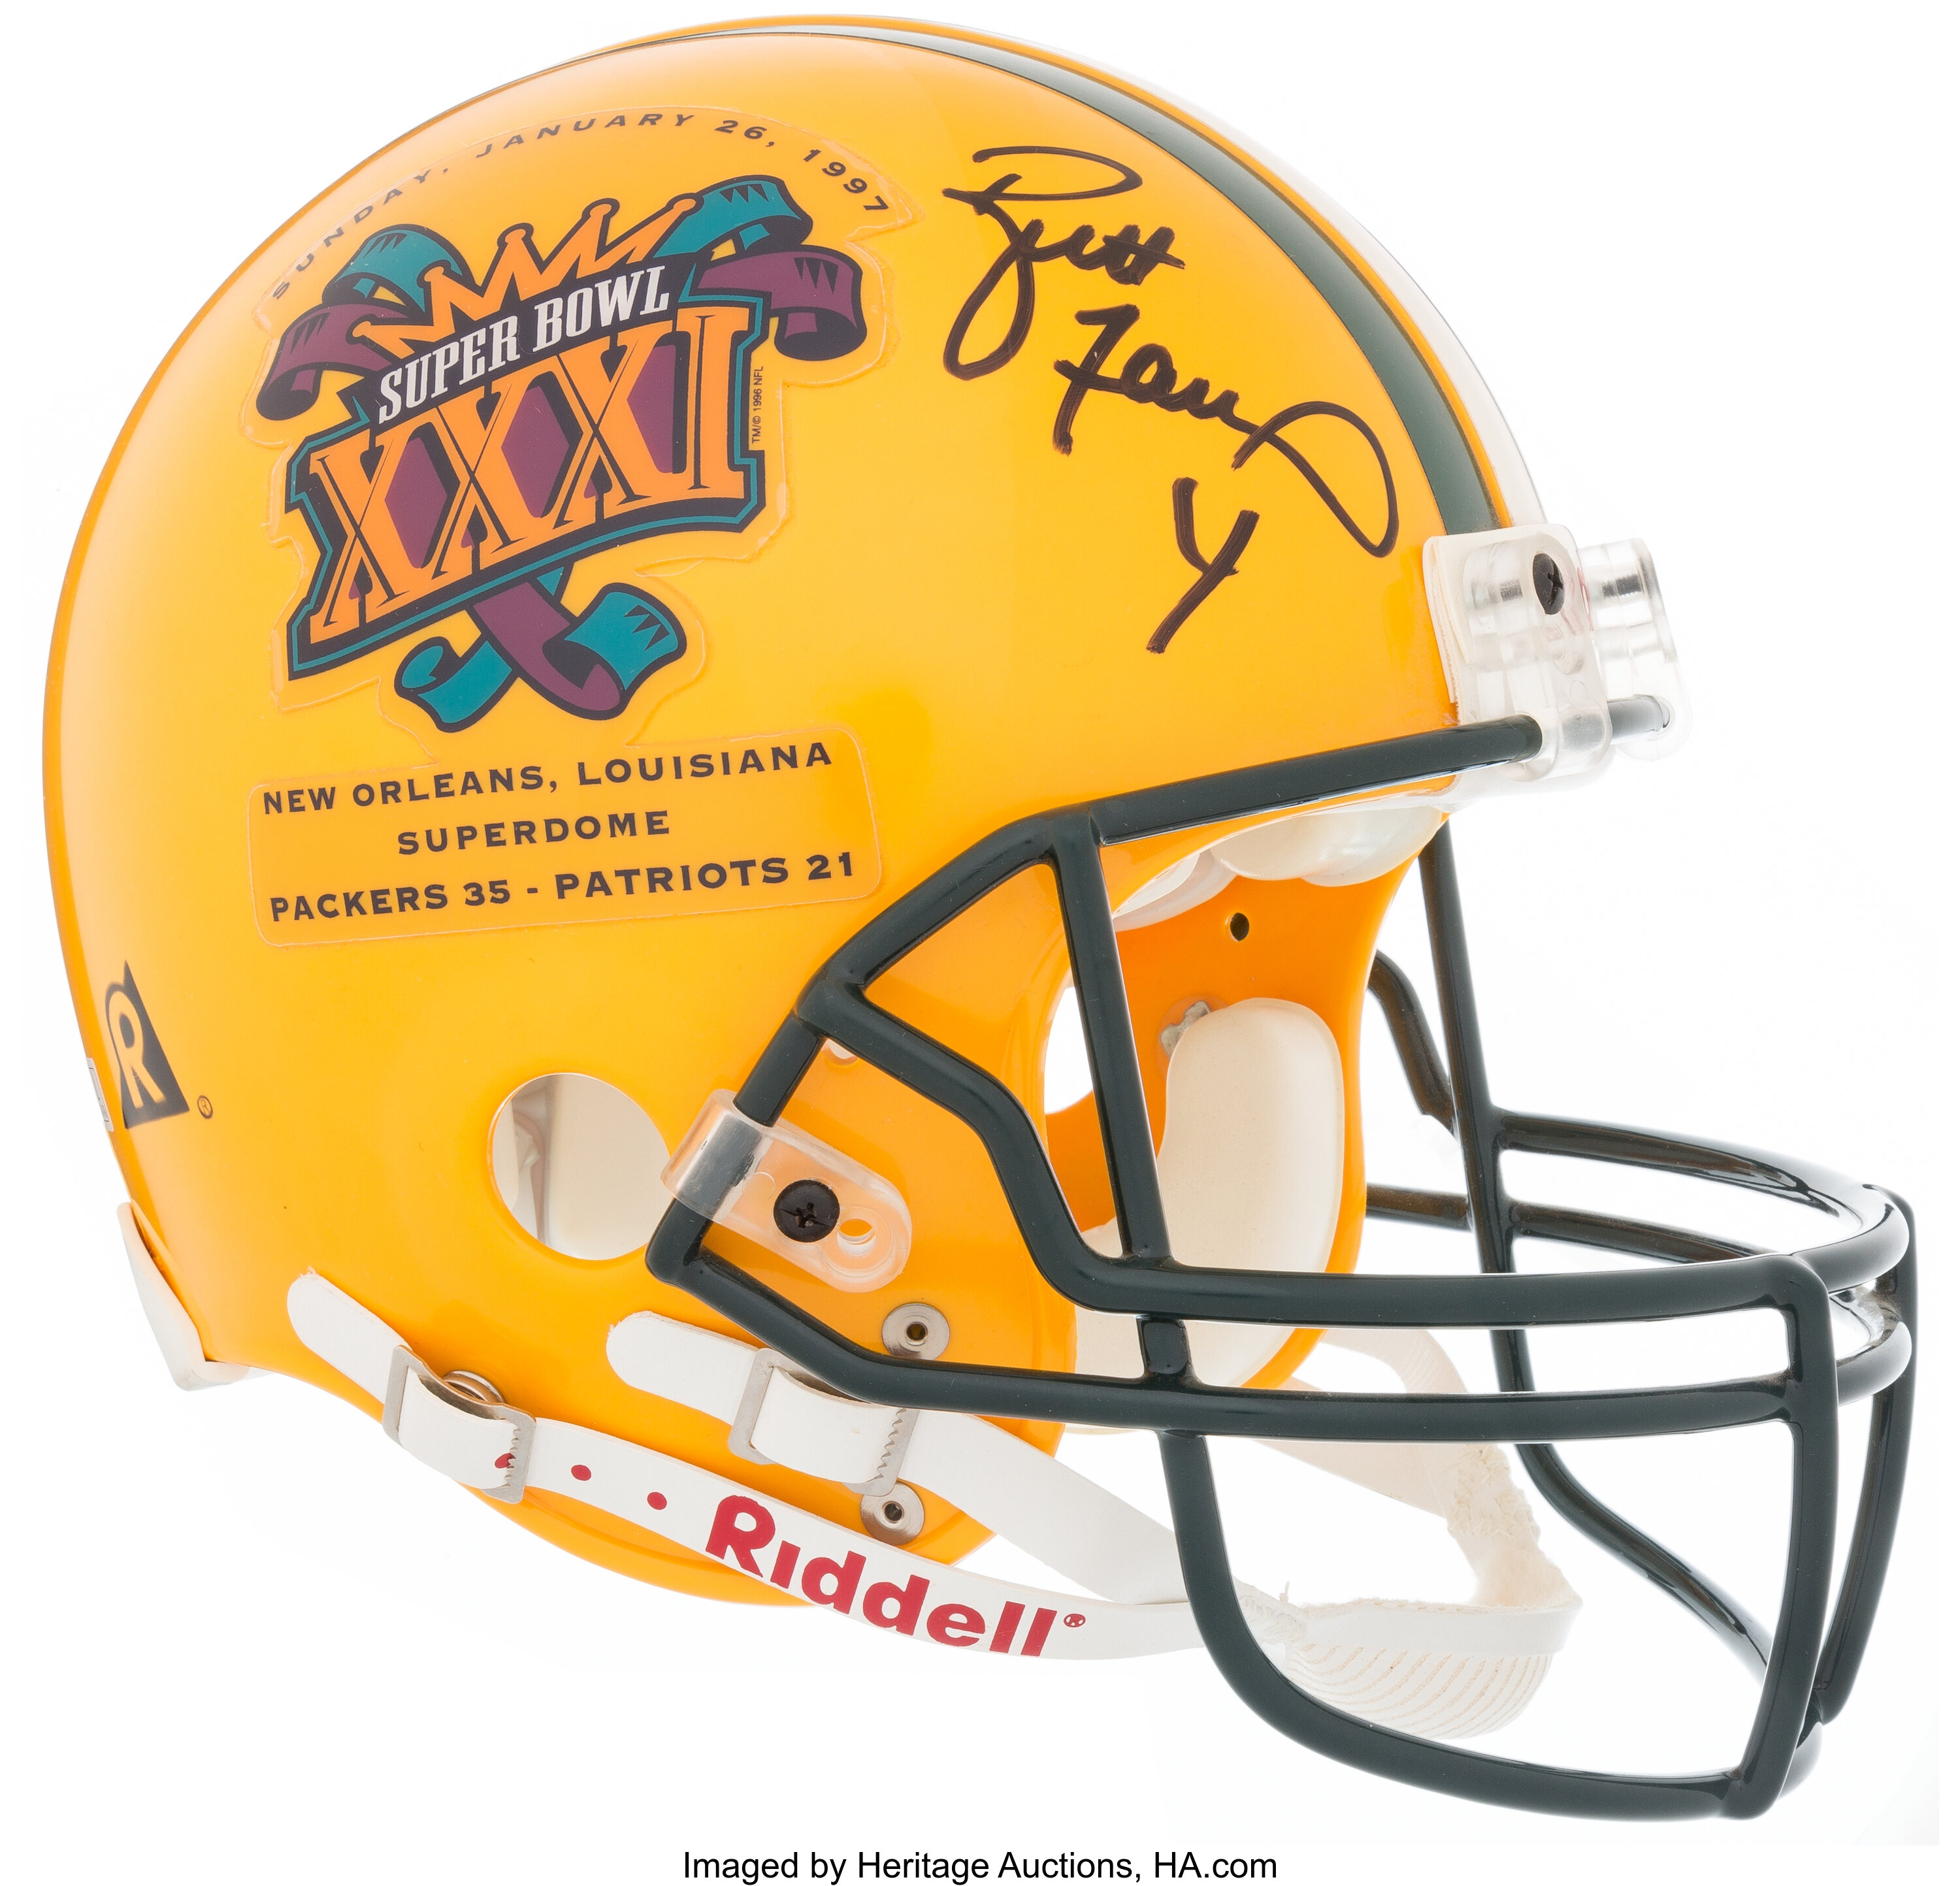 Riddell Brett Favre NFL Helmets for sale